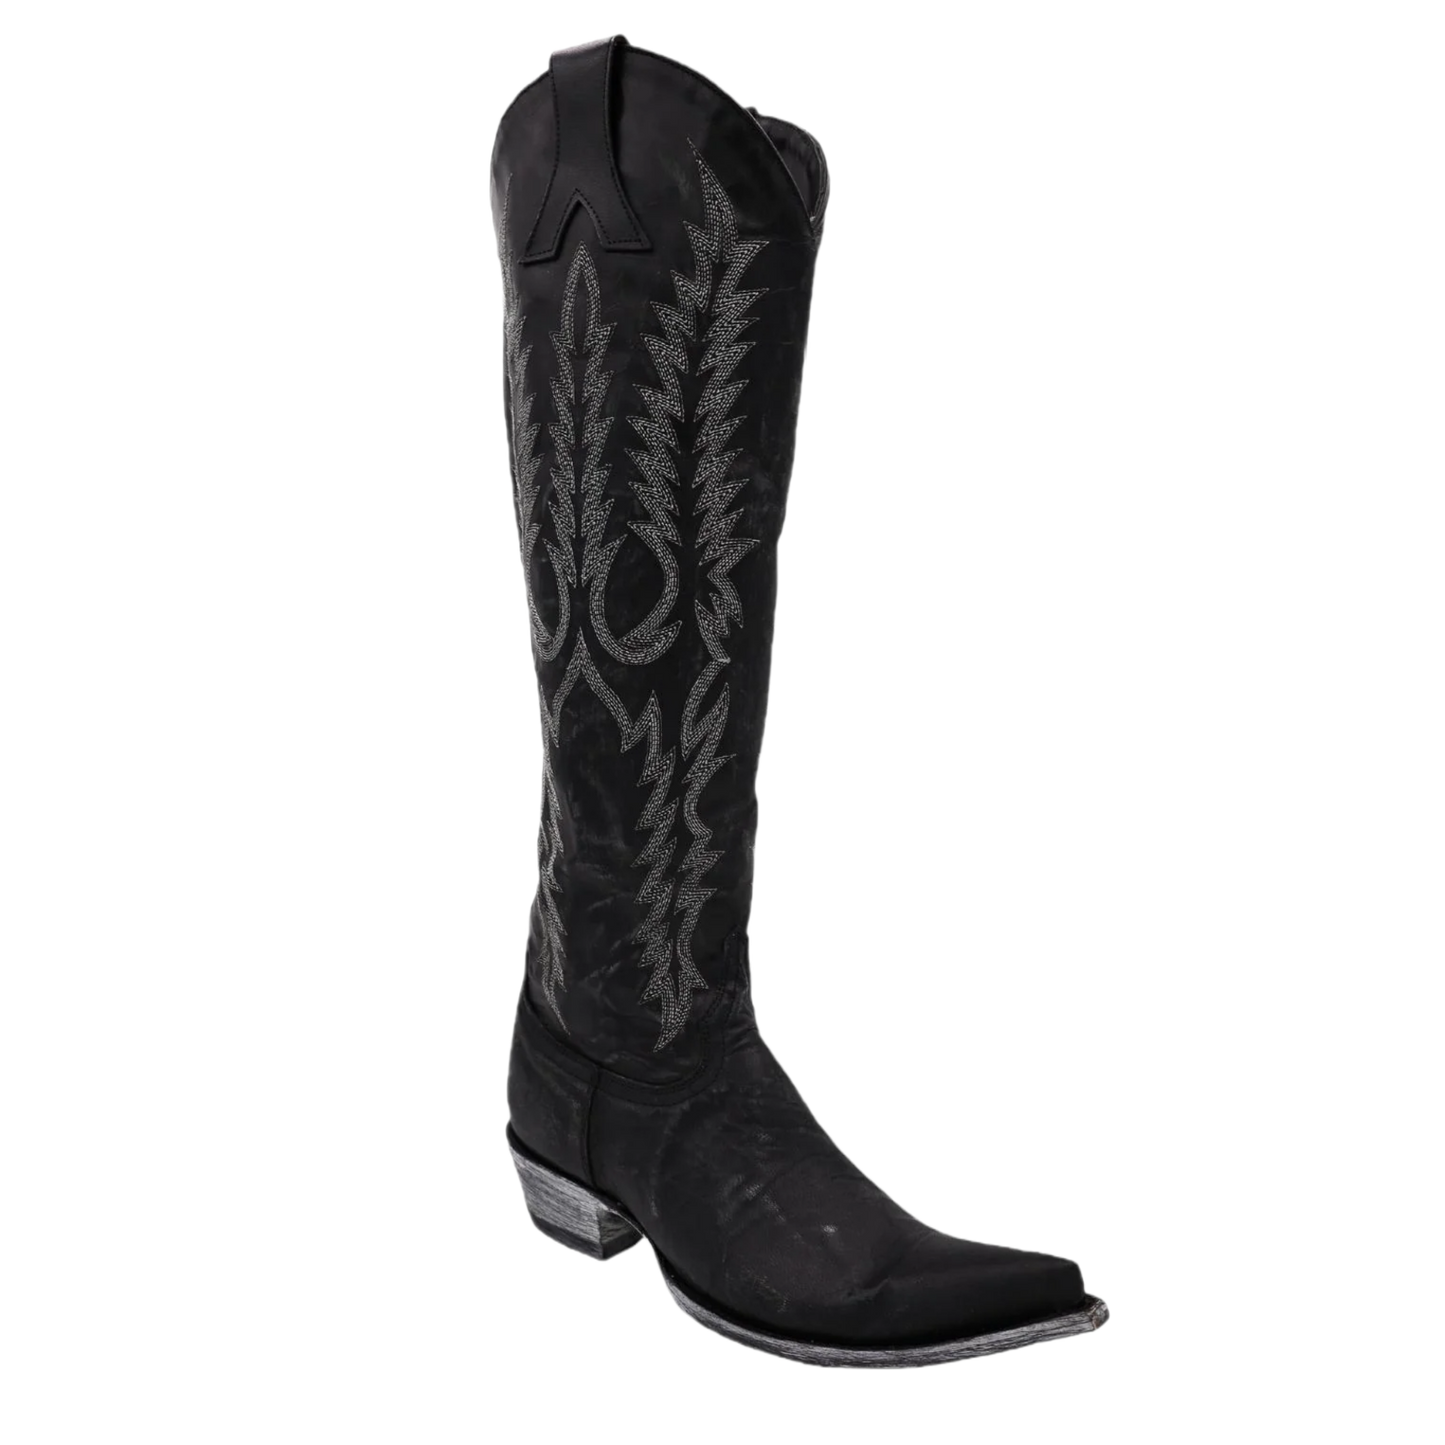 Old Gringo® Ladies Mayra Bis Black Western Boots L1213-15